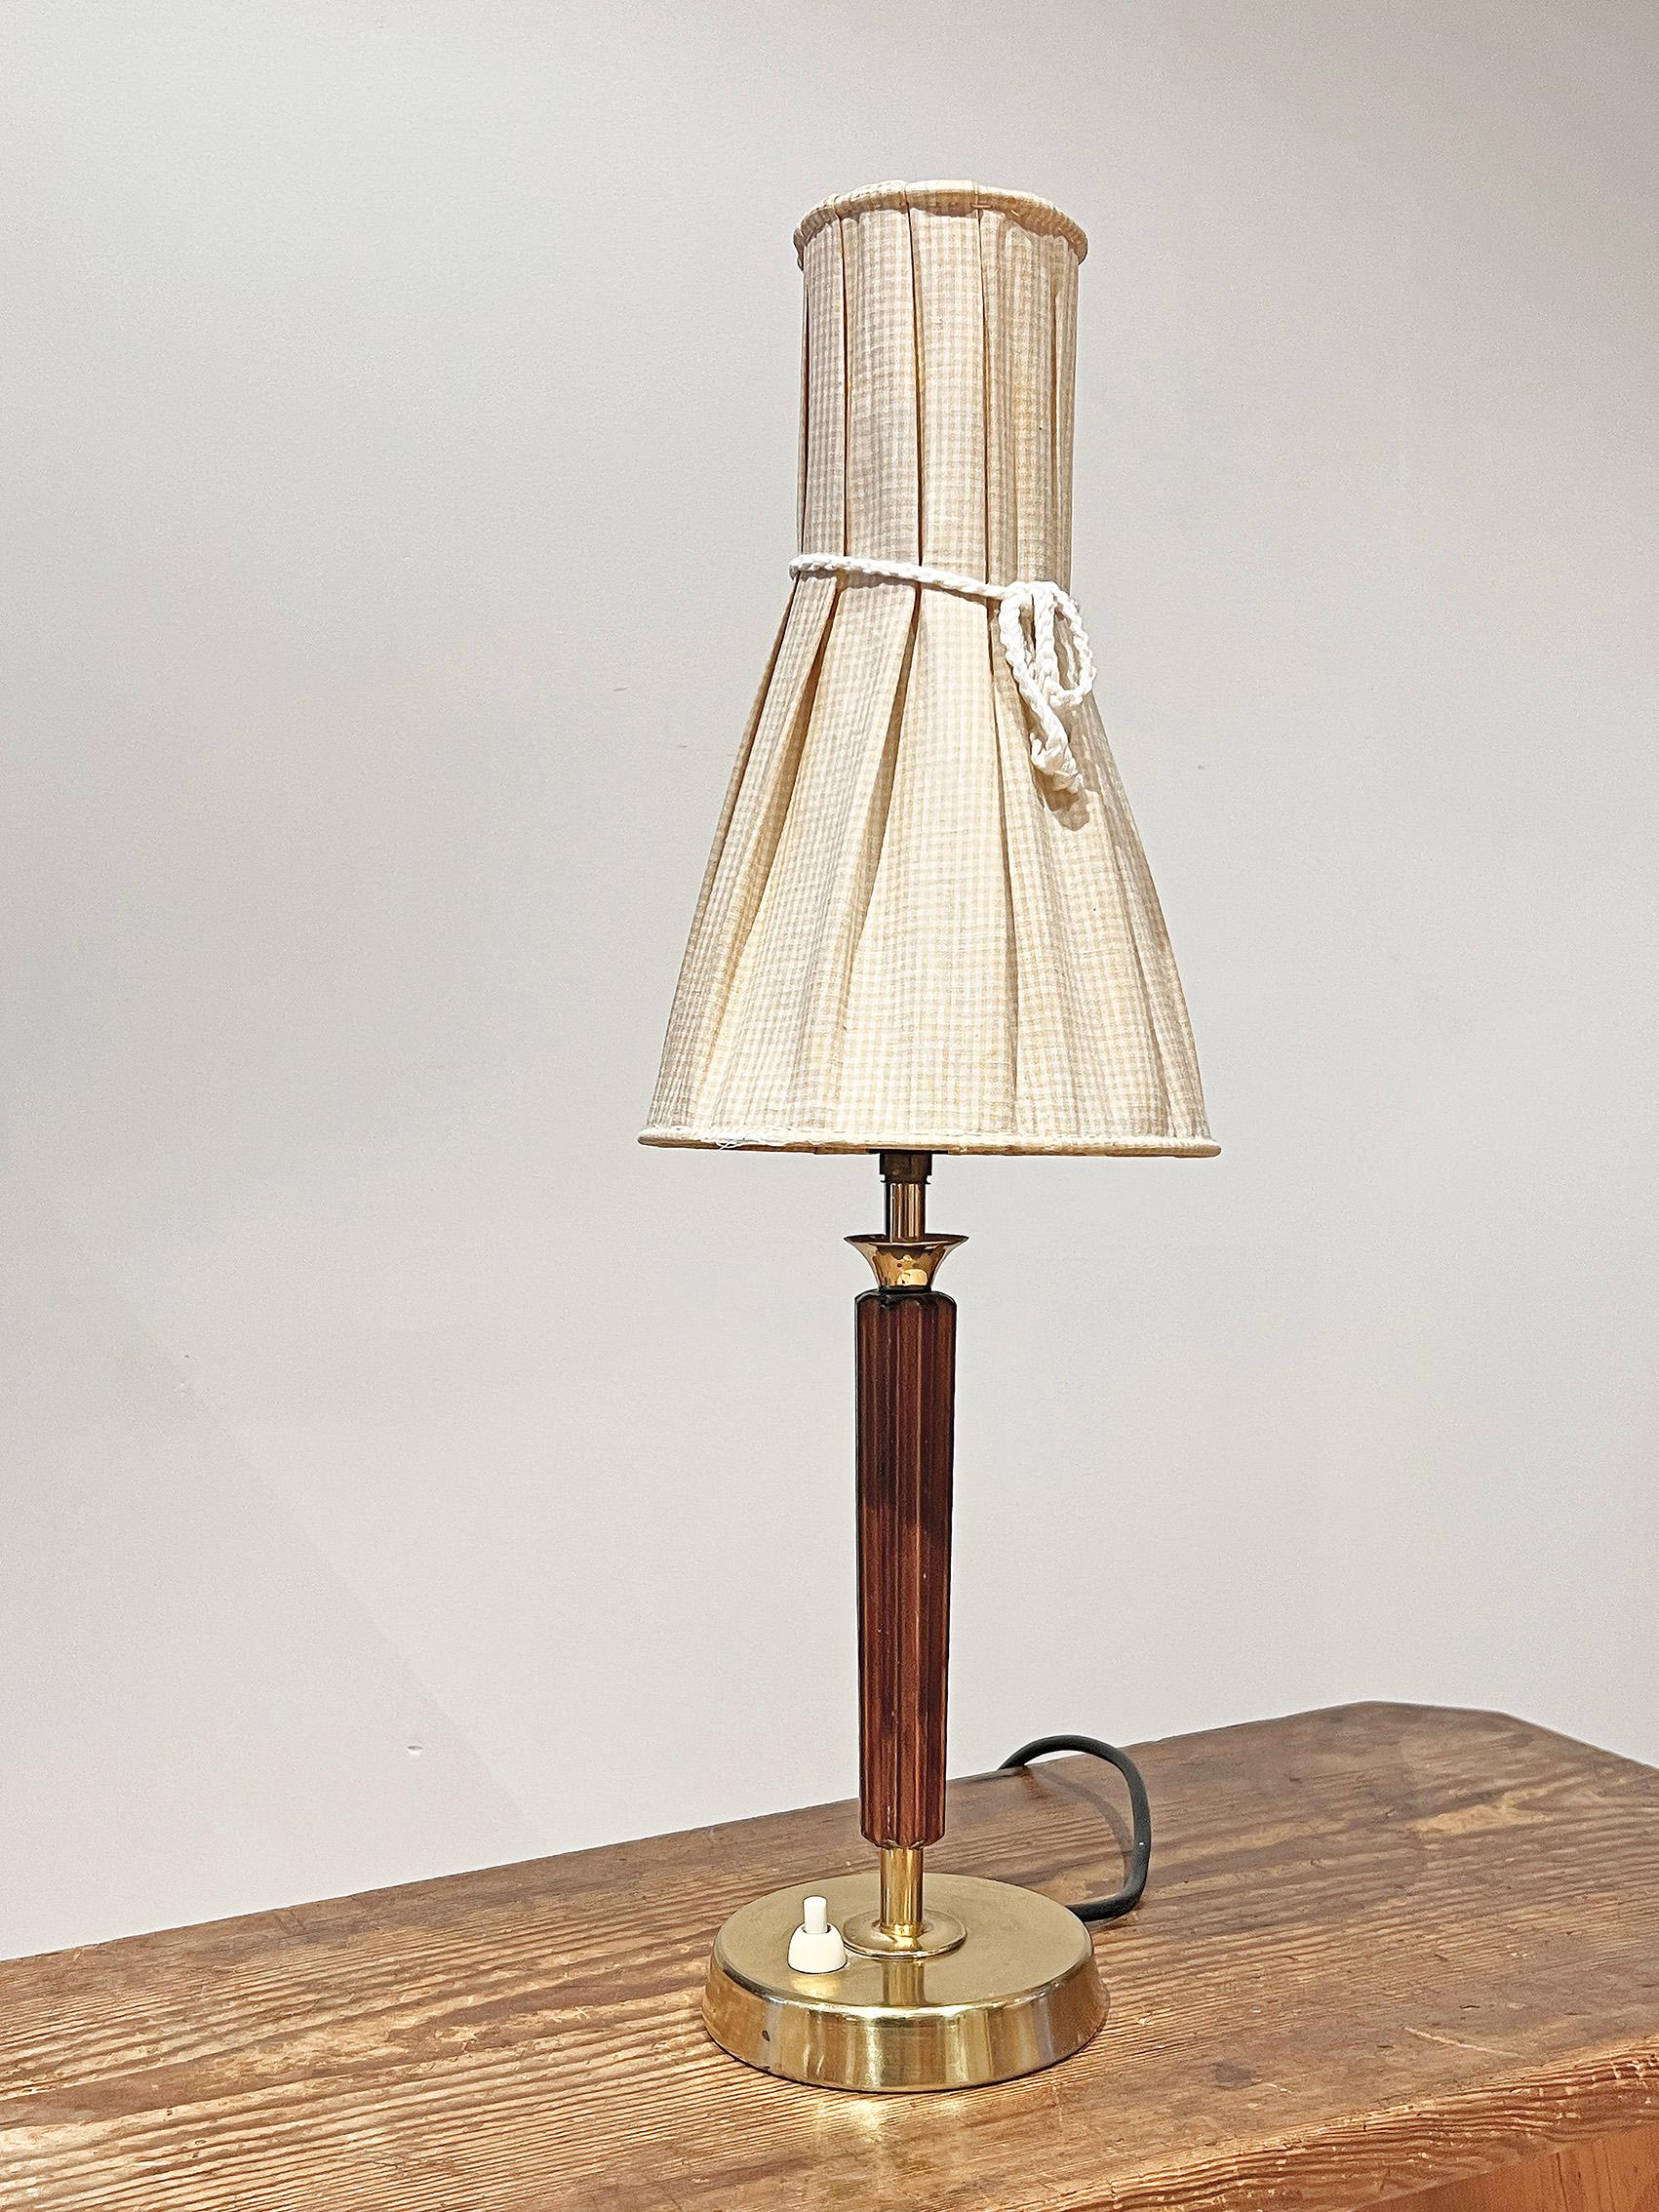 Lampe de table The Modern Scandinavian ca 1950-60's.
Concepteur et fabricant inconnus.
Bon état vintage, usure et patine correspondant à l'âge et à l'utilisation. 
Rayures sur la base, usure du pied de la lampe.